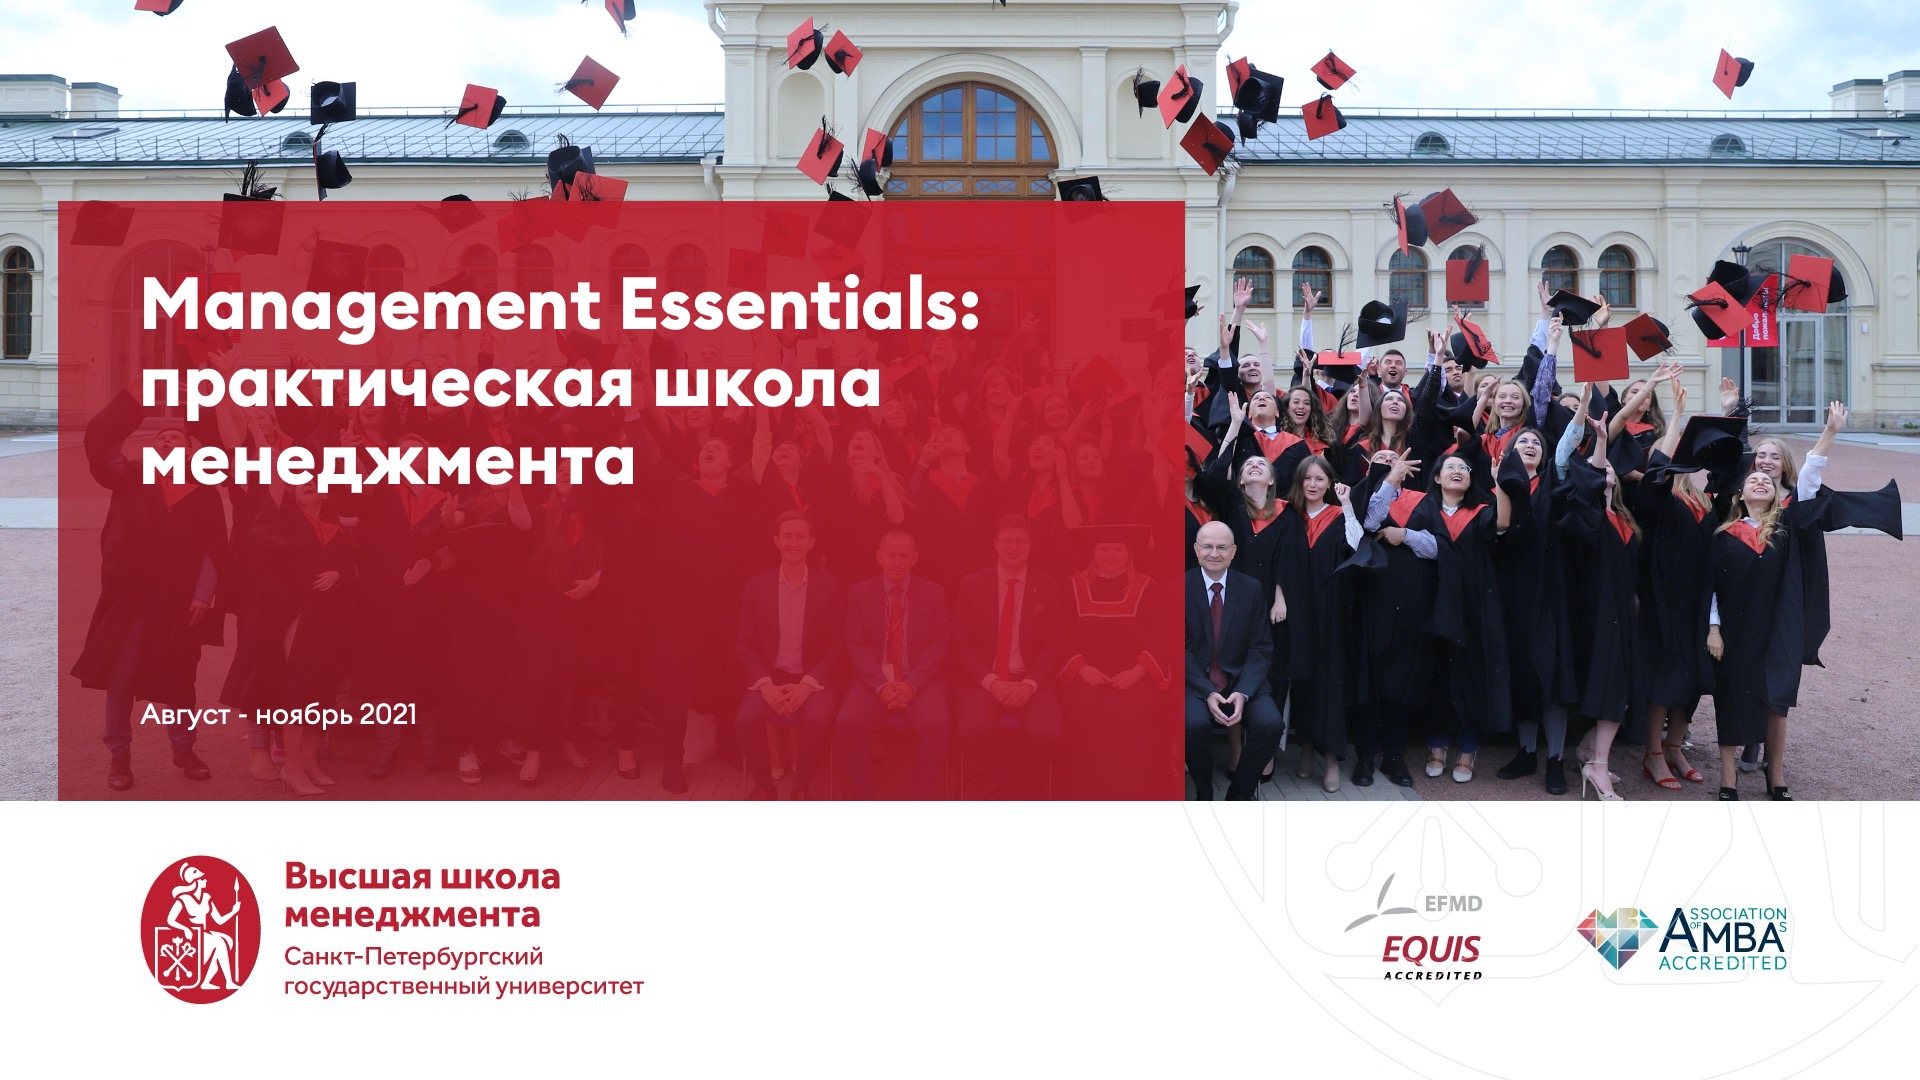 Management Essentials: практическая школа менеджмента для ФНС